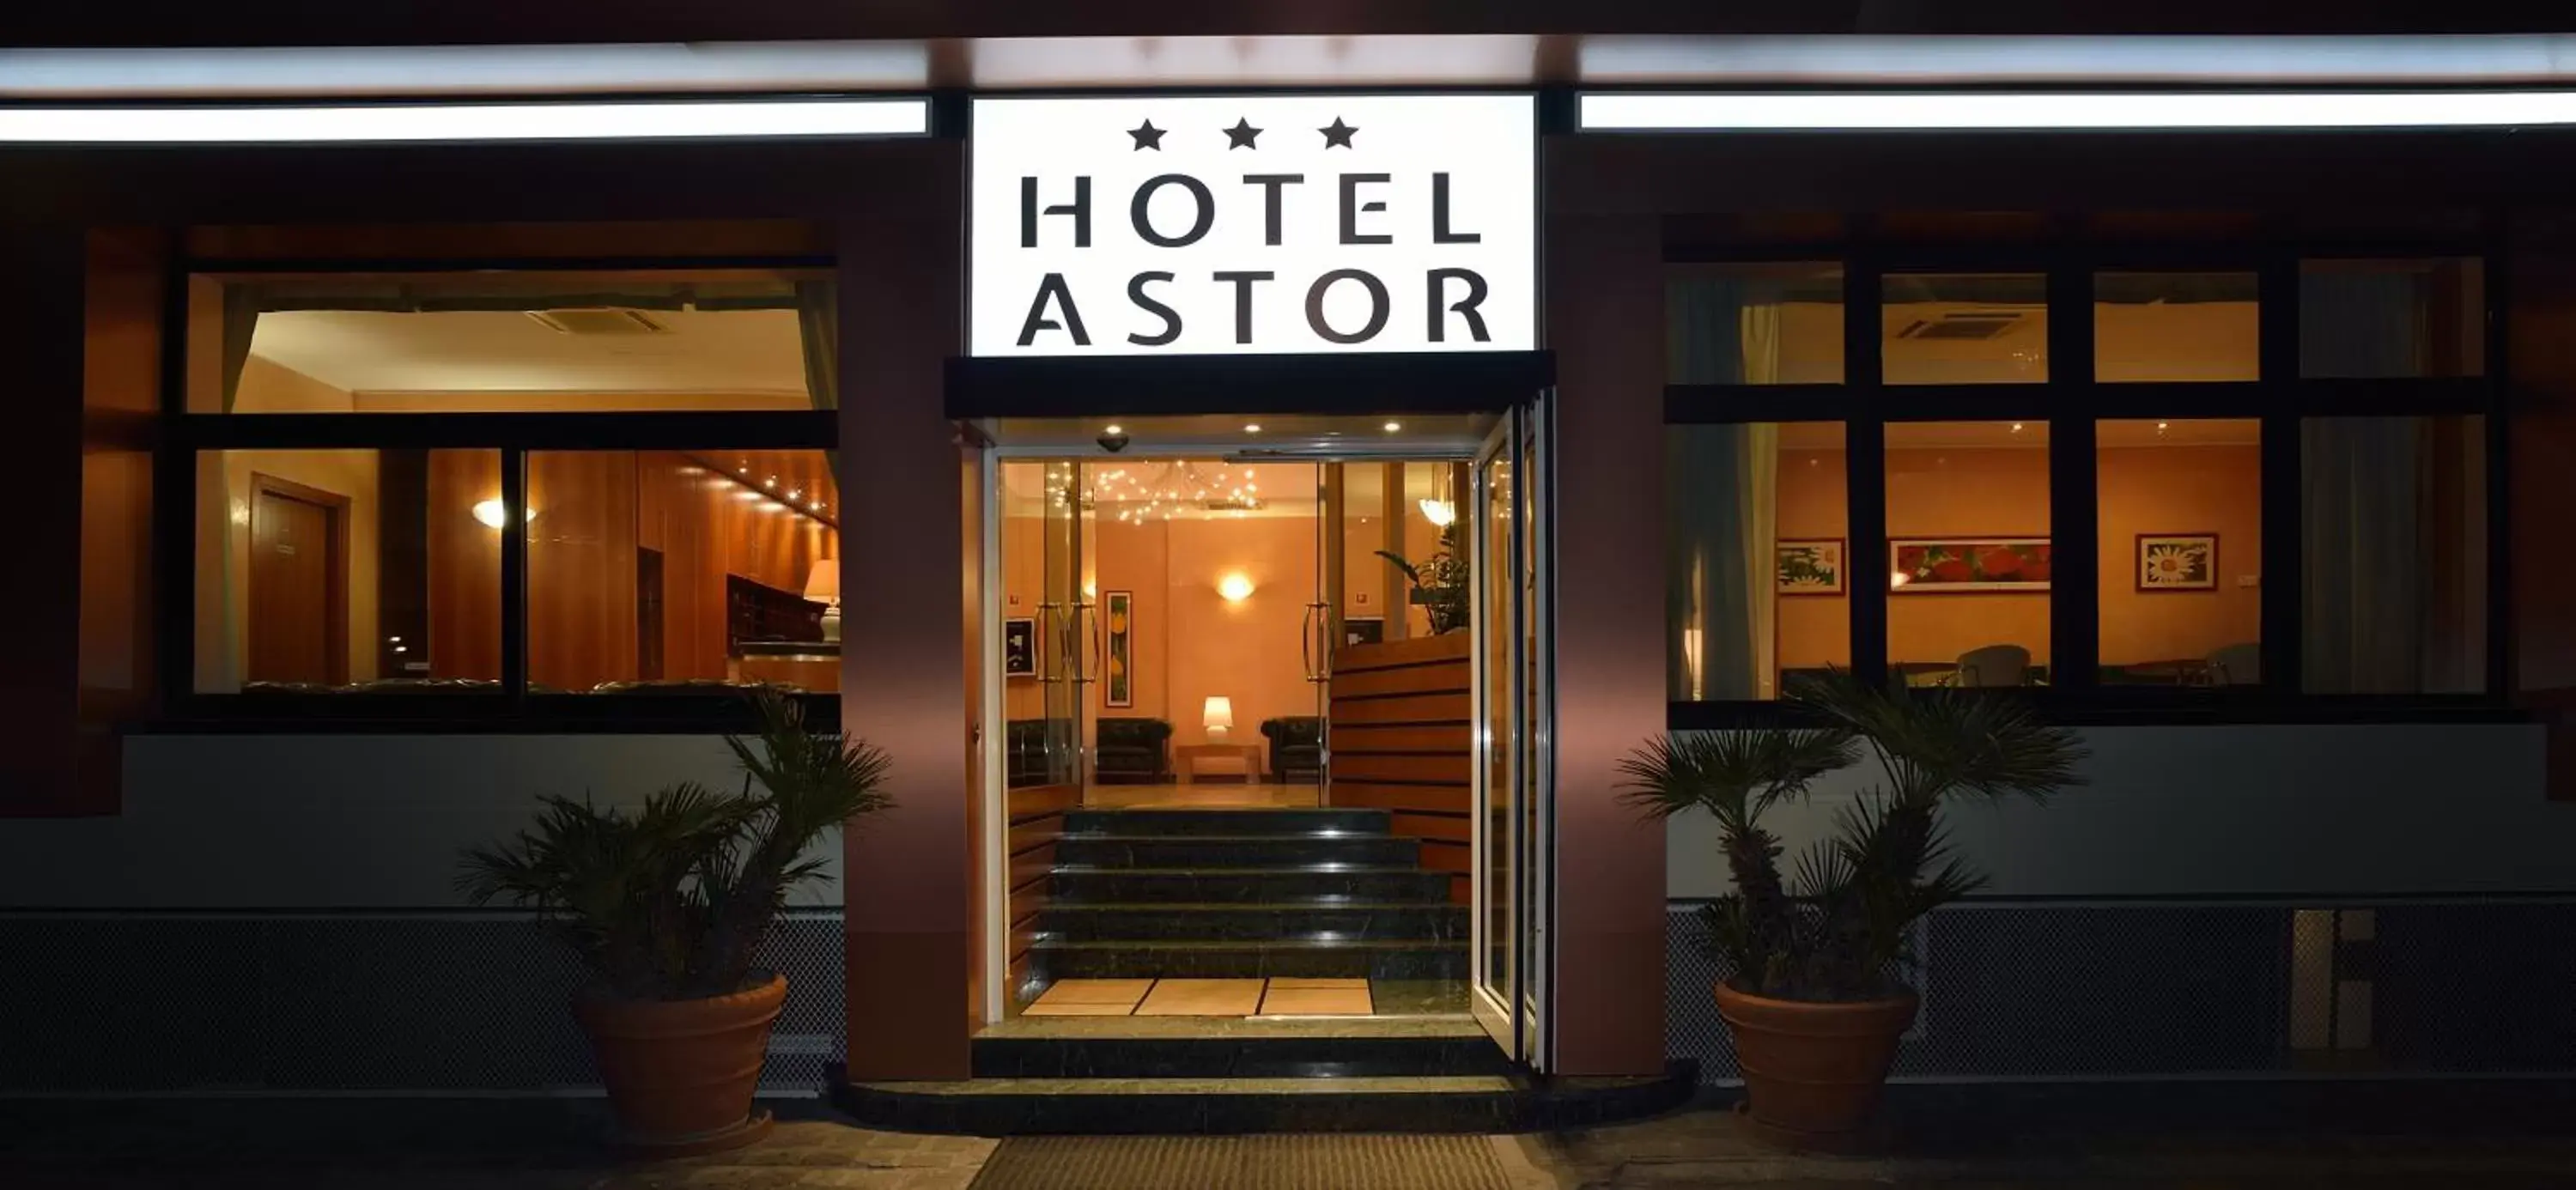 Facade/entrance in Astor Hotel